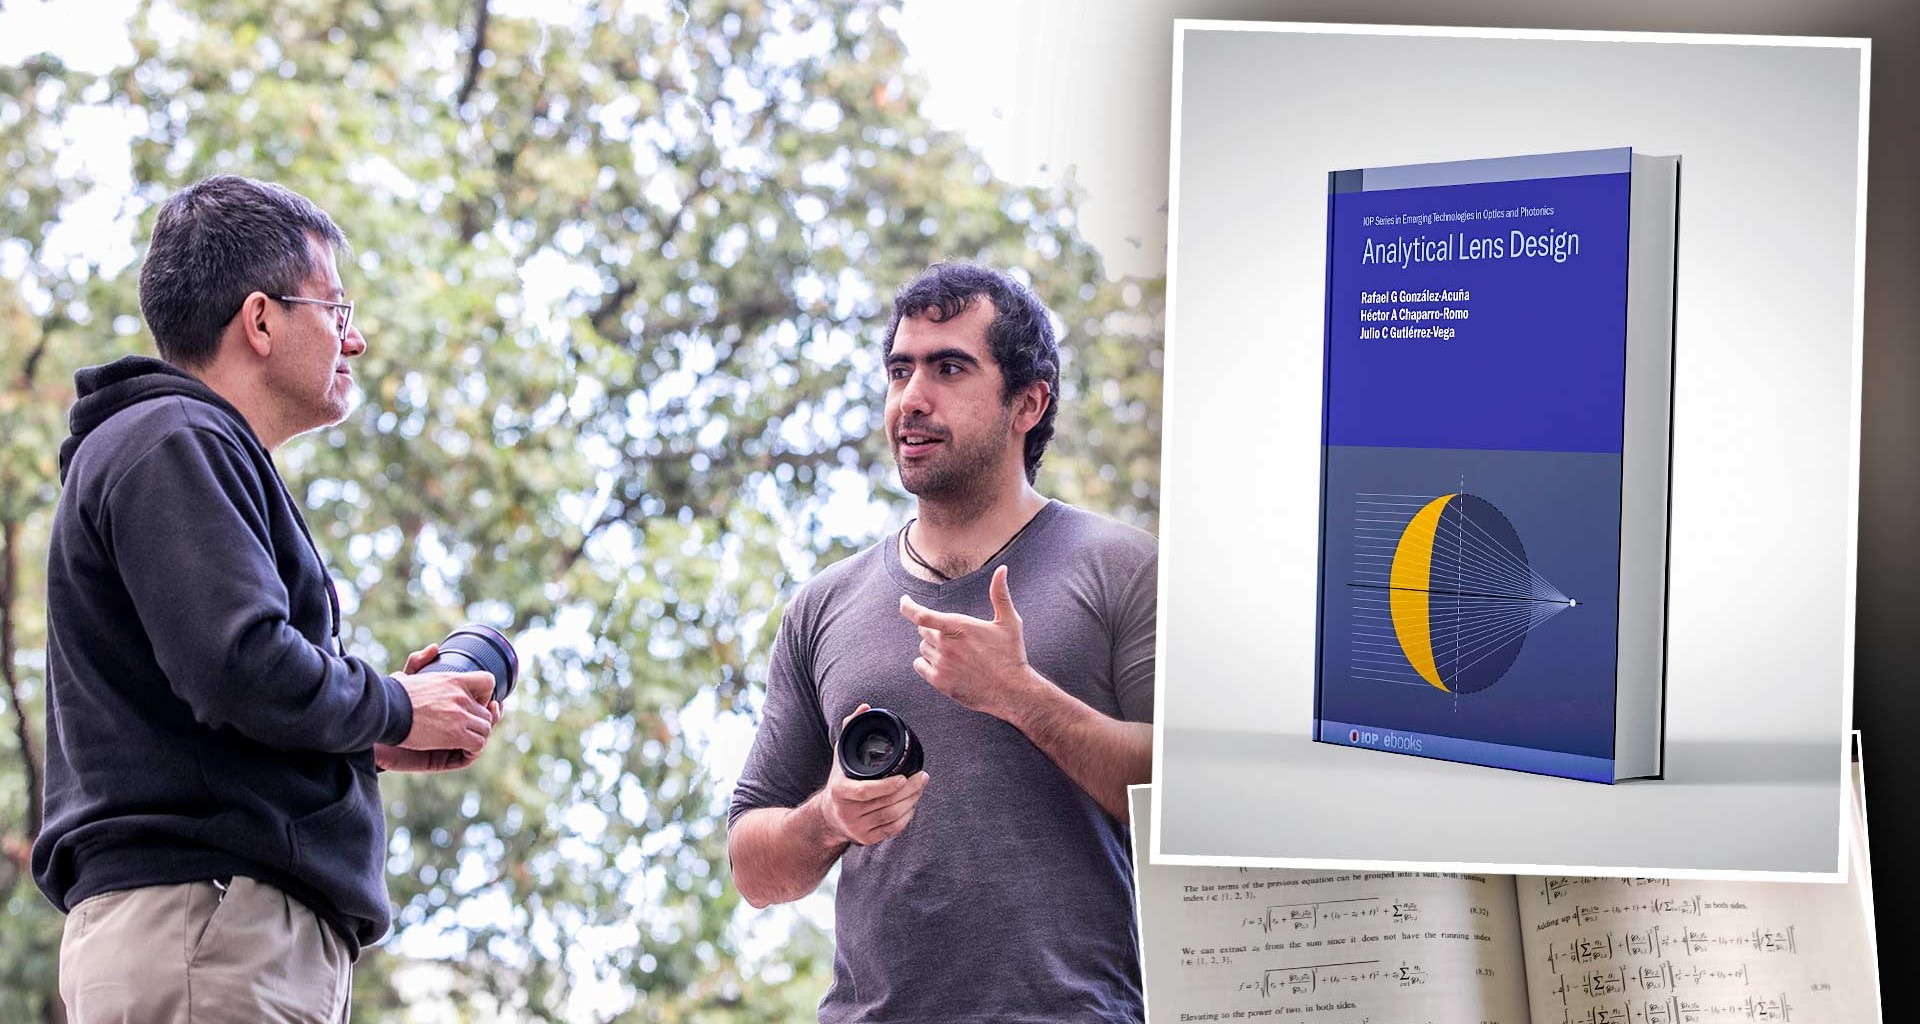 Alumno del Tec publica libro científico con solución a temas ópticos